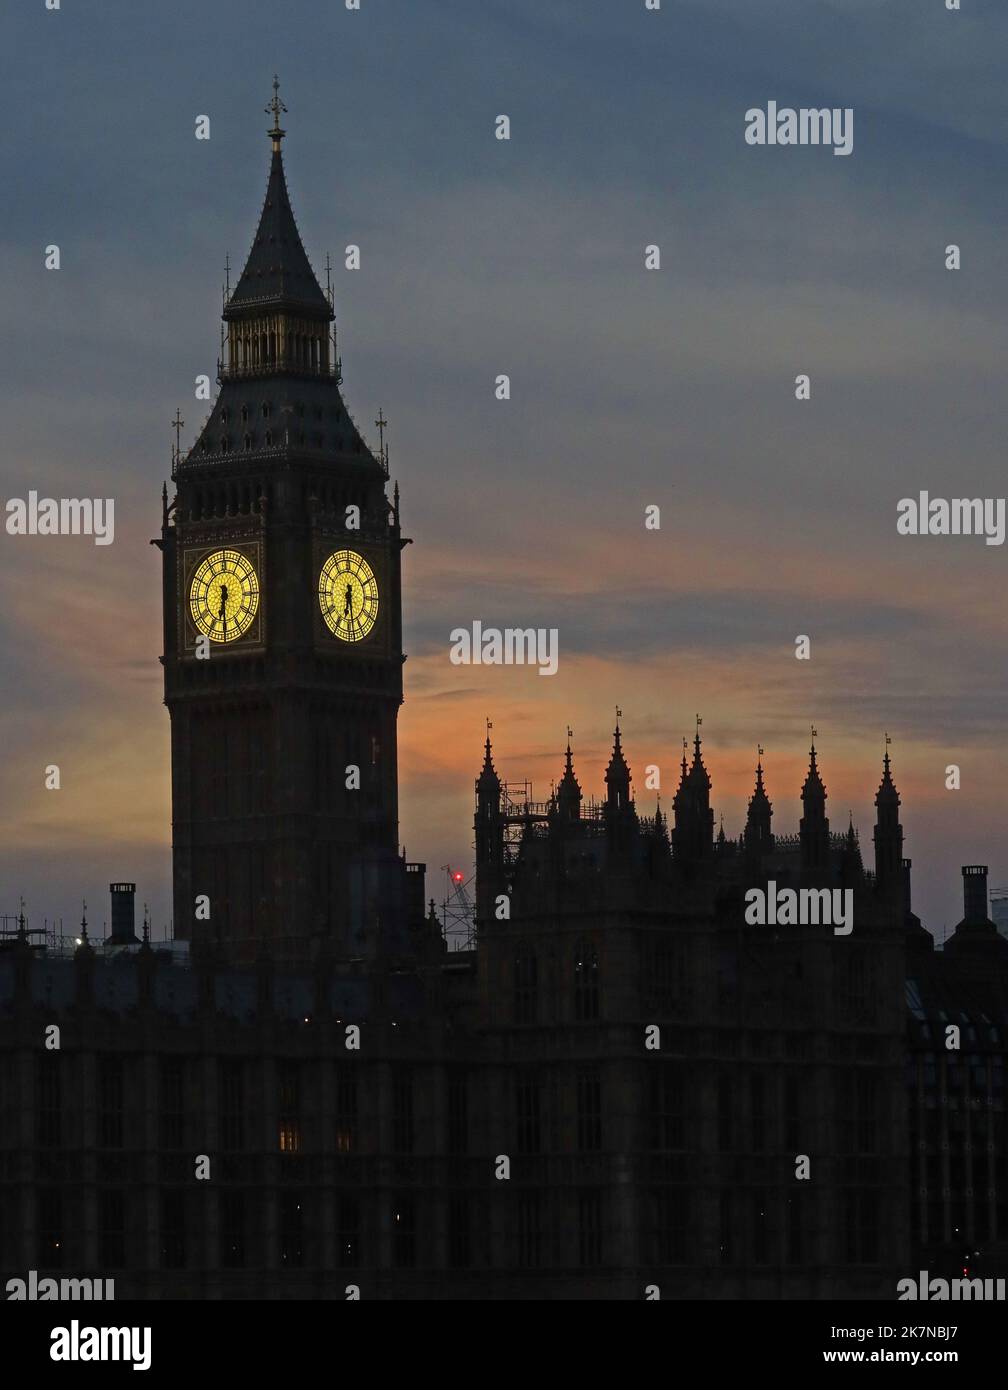 Tour Big Ben et palais de Westminster, au crépuscule, Londres, Angleterre, Royaume-Uni, SW1A 0AA Banque D'Images